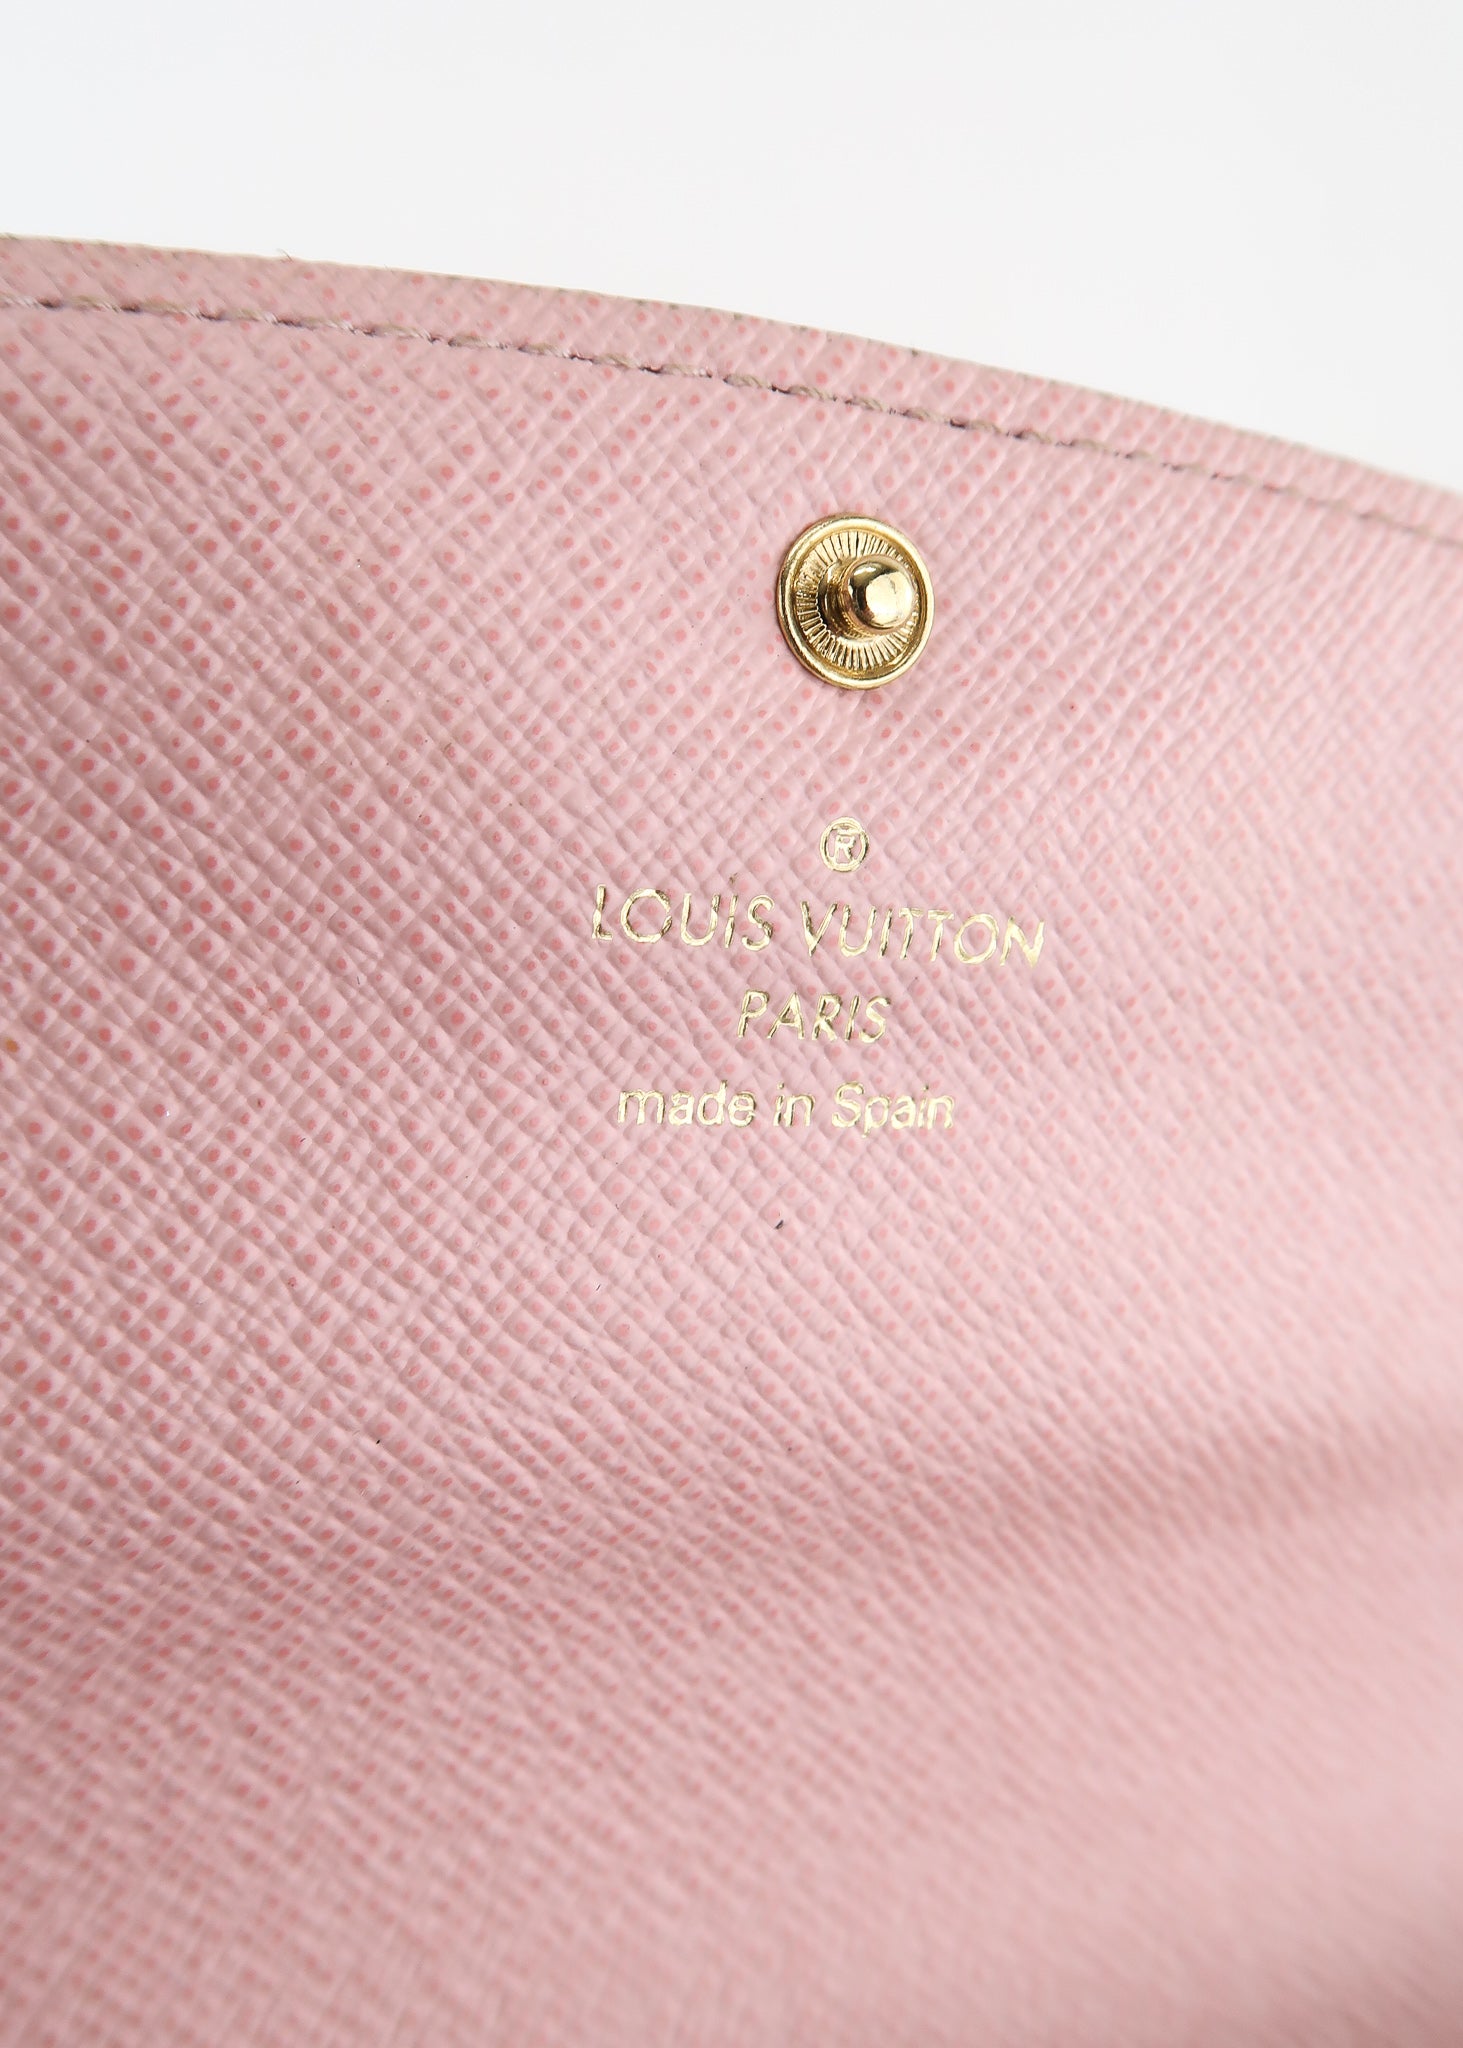 Louis Vuitton M82291 Wallet Beige,Monogram,Pink,White